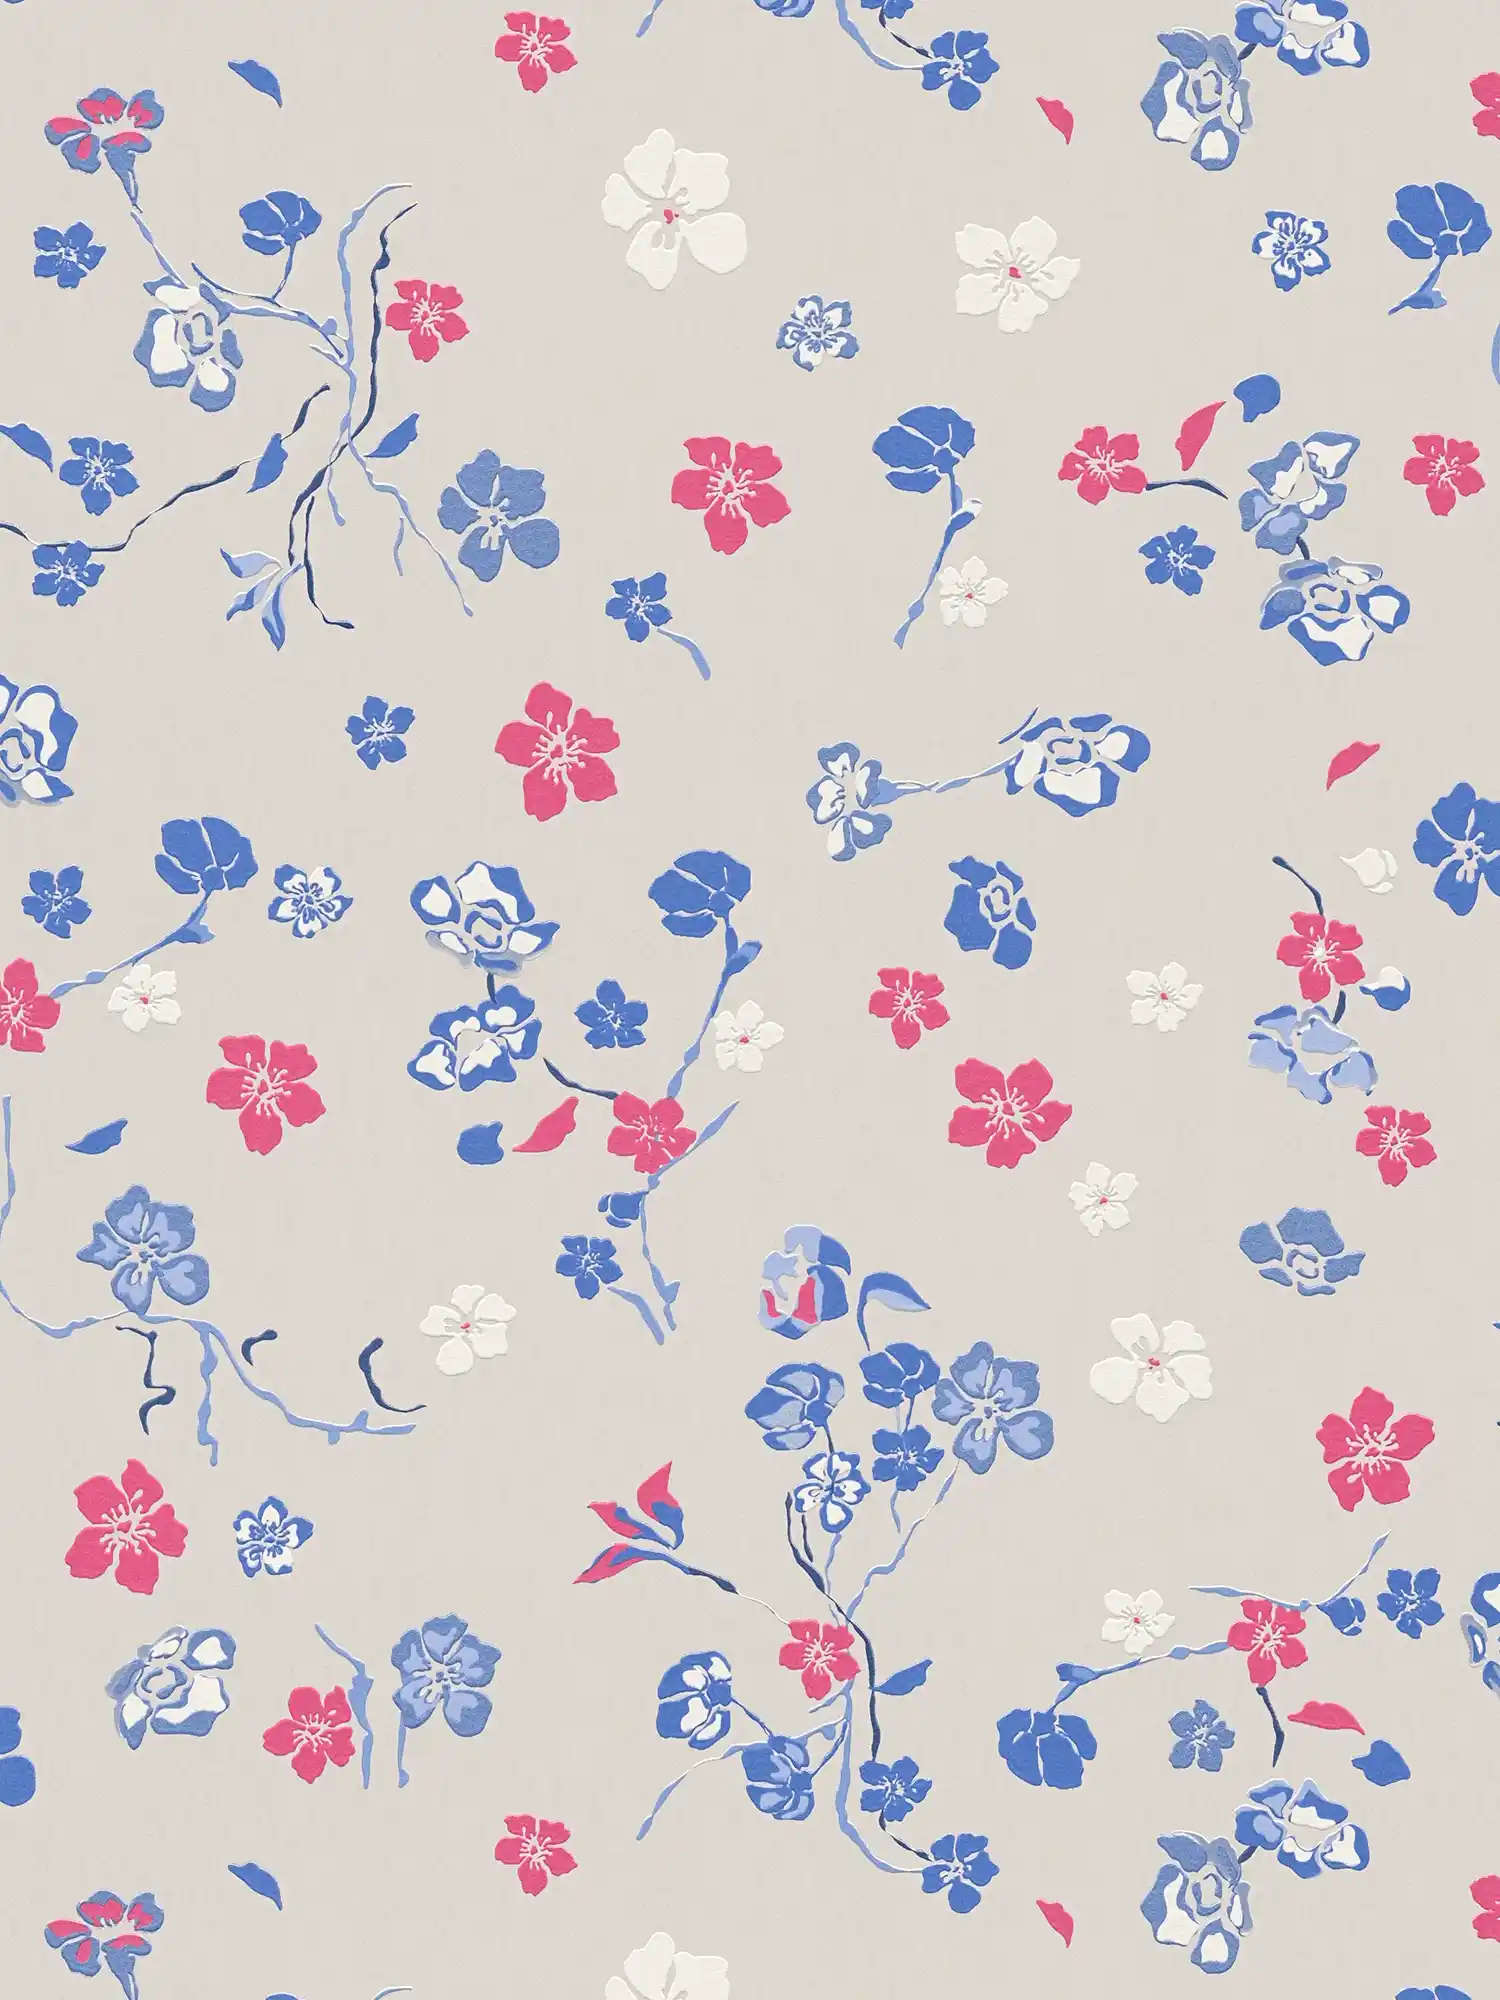 Papel pintado no tejido con alegres motivos florales - gris claro, azul, rosa
